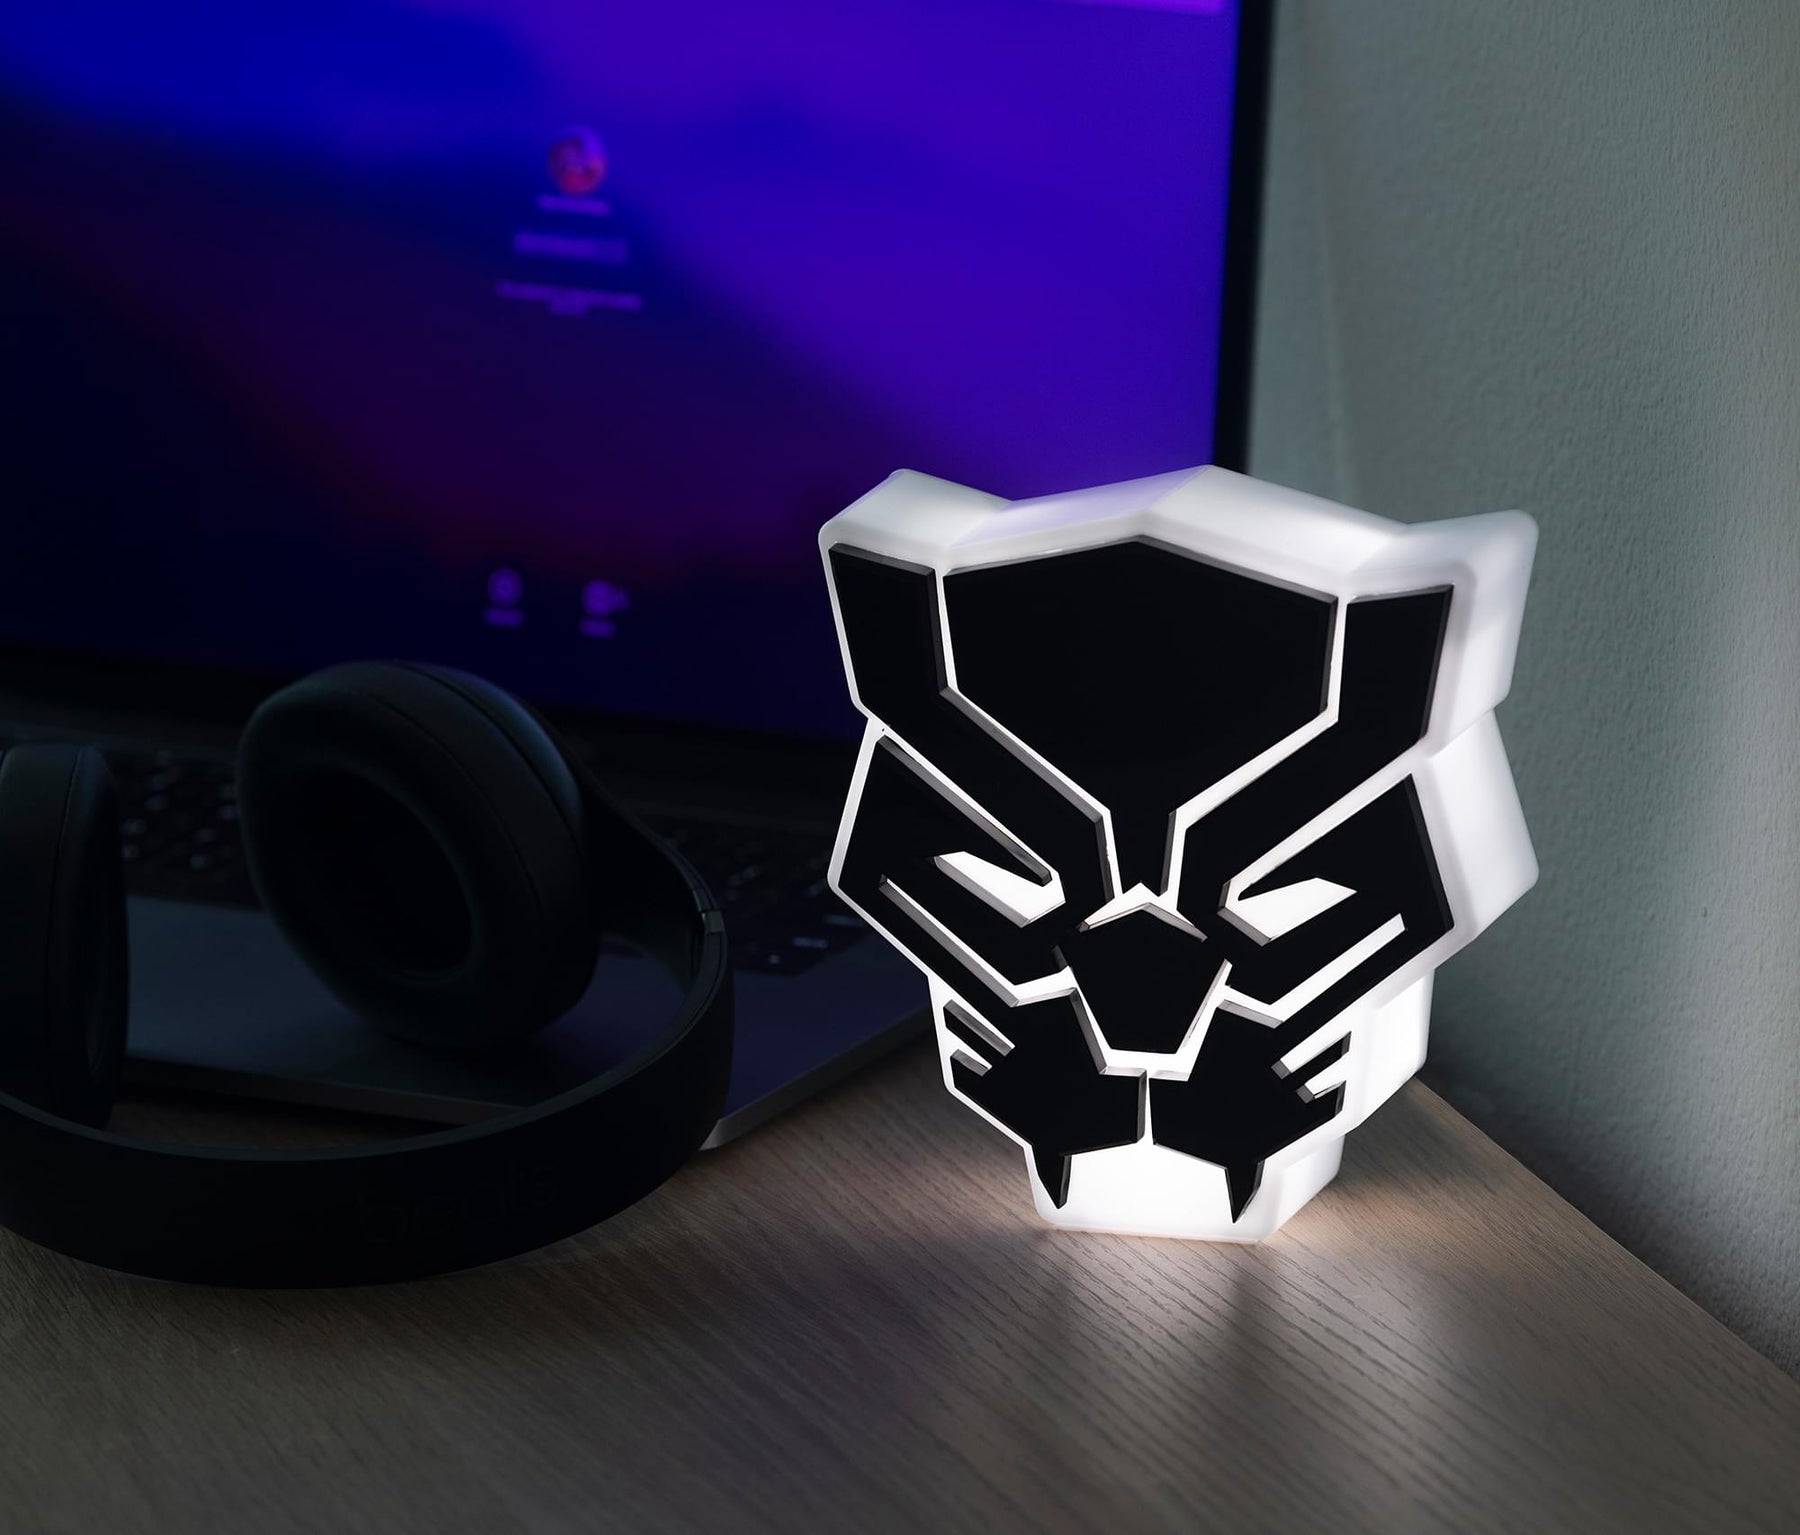 Marvel Black Panther LED Mood Light | Black Panther Mood Light Figure | 6 Inches